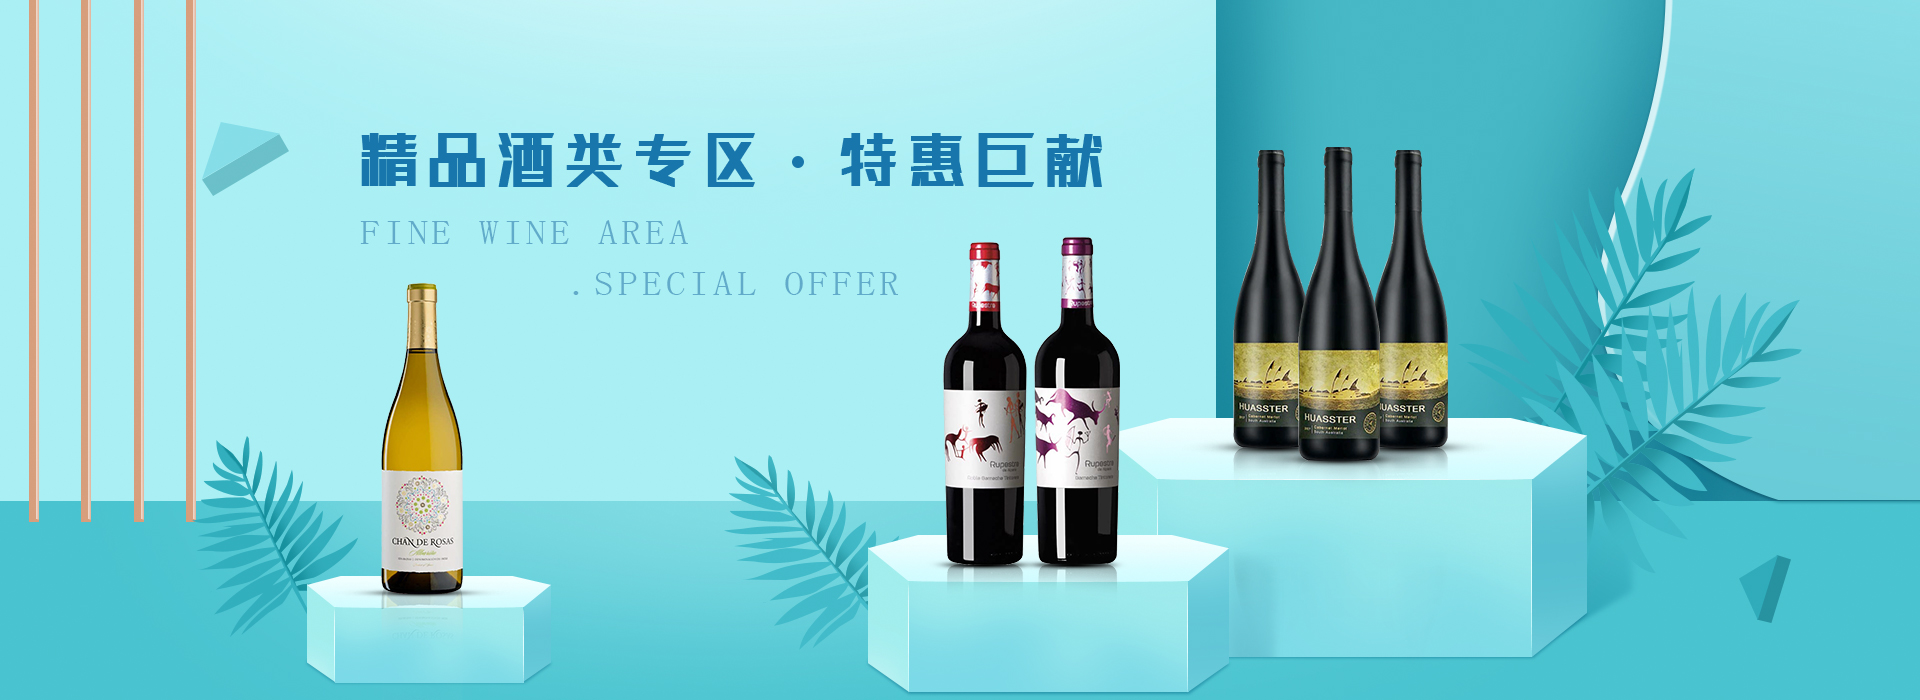 广州红酒团购零售_葡萄酒相关-福莱沃酒业广州有限公司